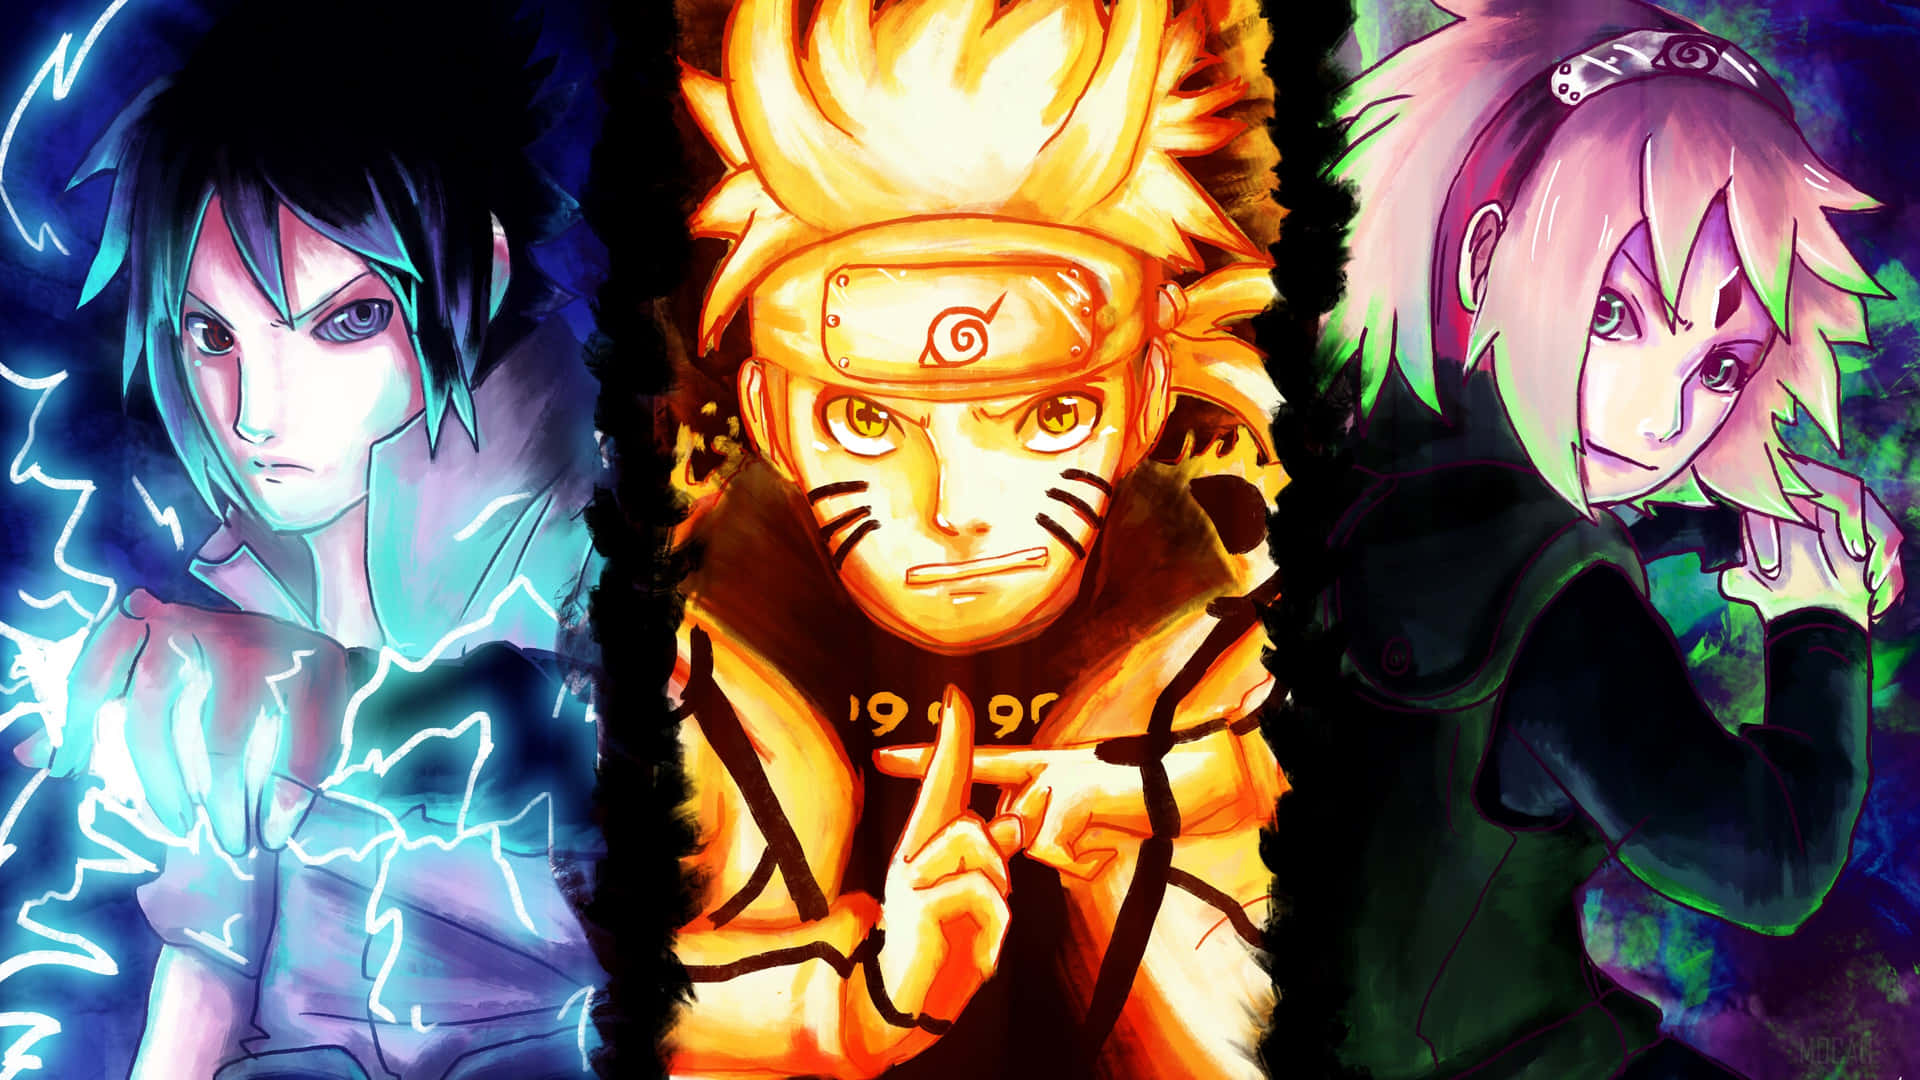 Uzumaki: Câu chuyện về Naruto Uzumaki hứa hẹn sẽ đem đến cho bạn một trải nghiệm hoàn toàn mới về thế giới ninja khác biệt. Truyện đầy màu sắc này không chỉ gây ấn tượng bởi cốt truyện hấp dẫn mà cả những chi tiết tinh tế trong hình ảnh của nhân vật. Hãy xem bức ảnh liên quan để tìm hiểu thêm về Naruto Uzumaki.